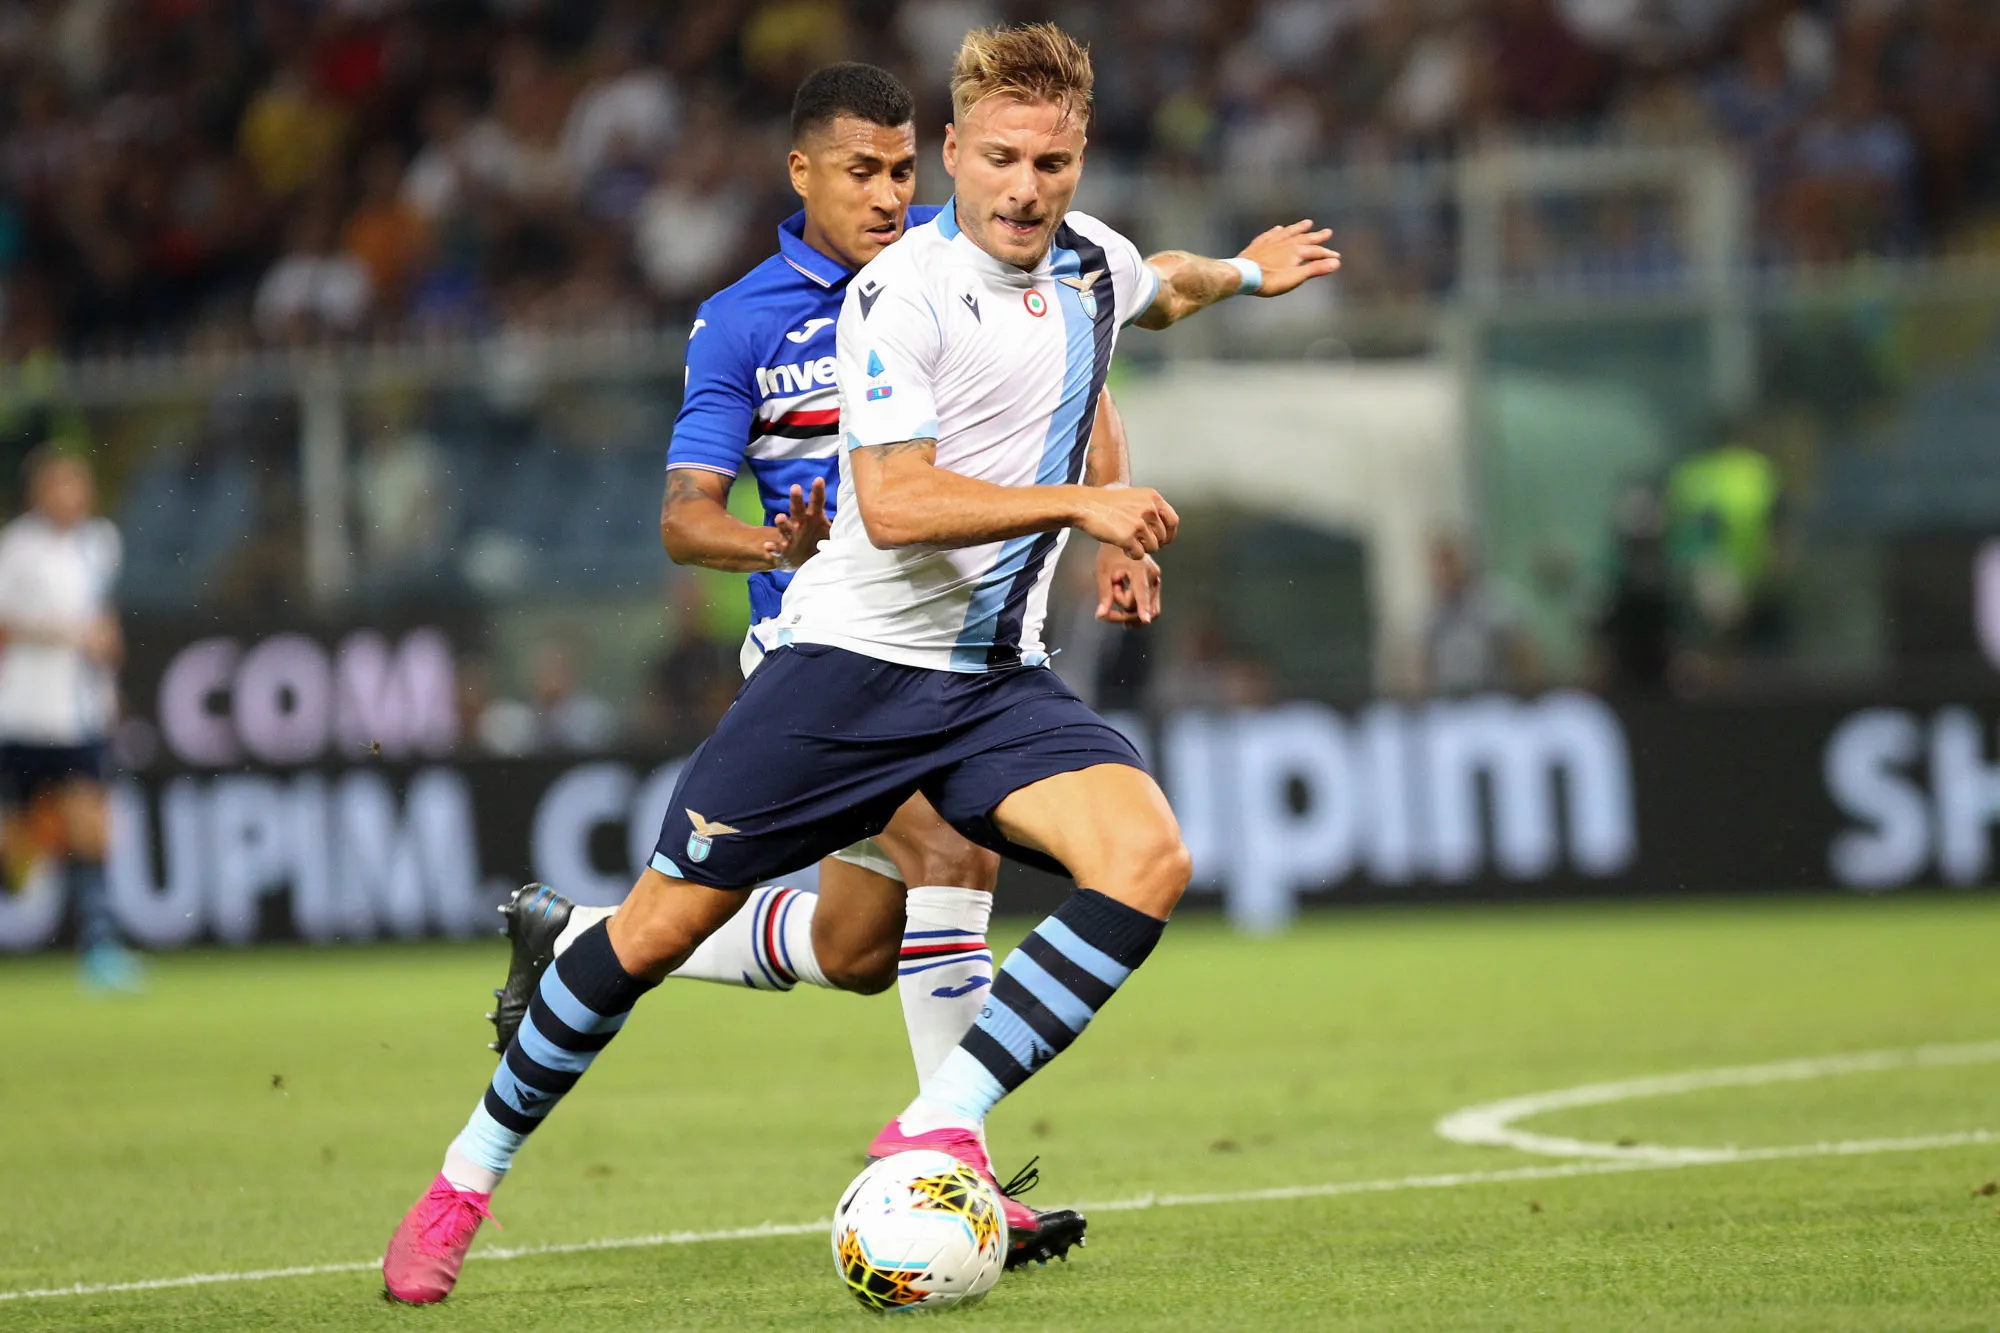 Pronostic Lazio Naples : Analyse, prono et cotes du match de Serie A